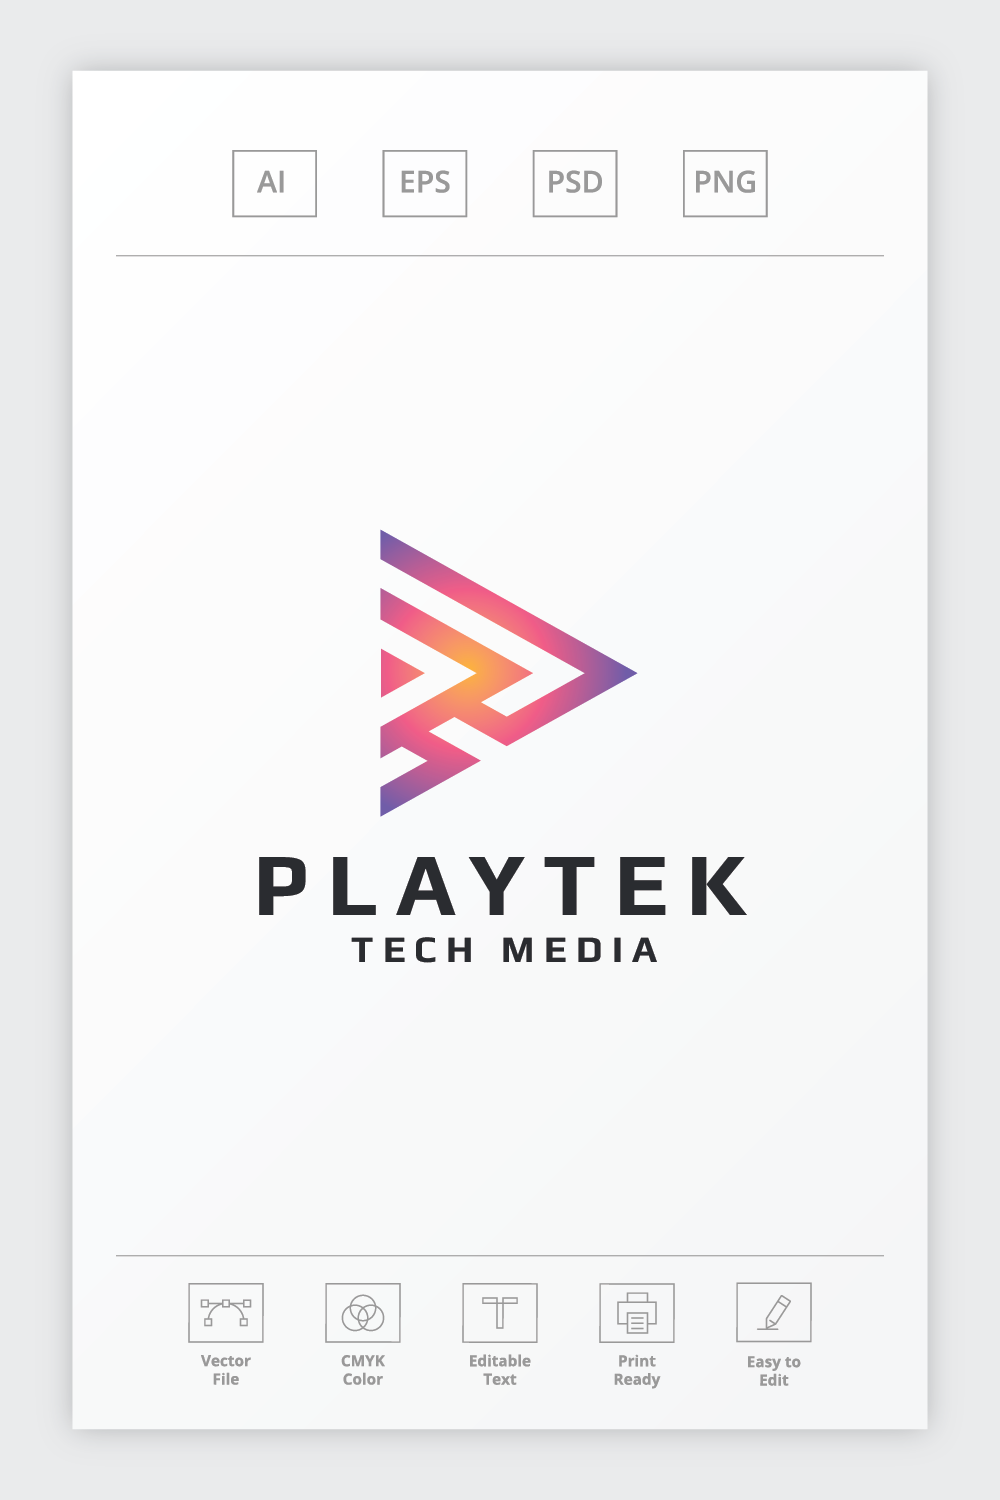 Playtek Media Play Logo pinterest preview image.